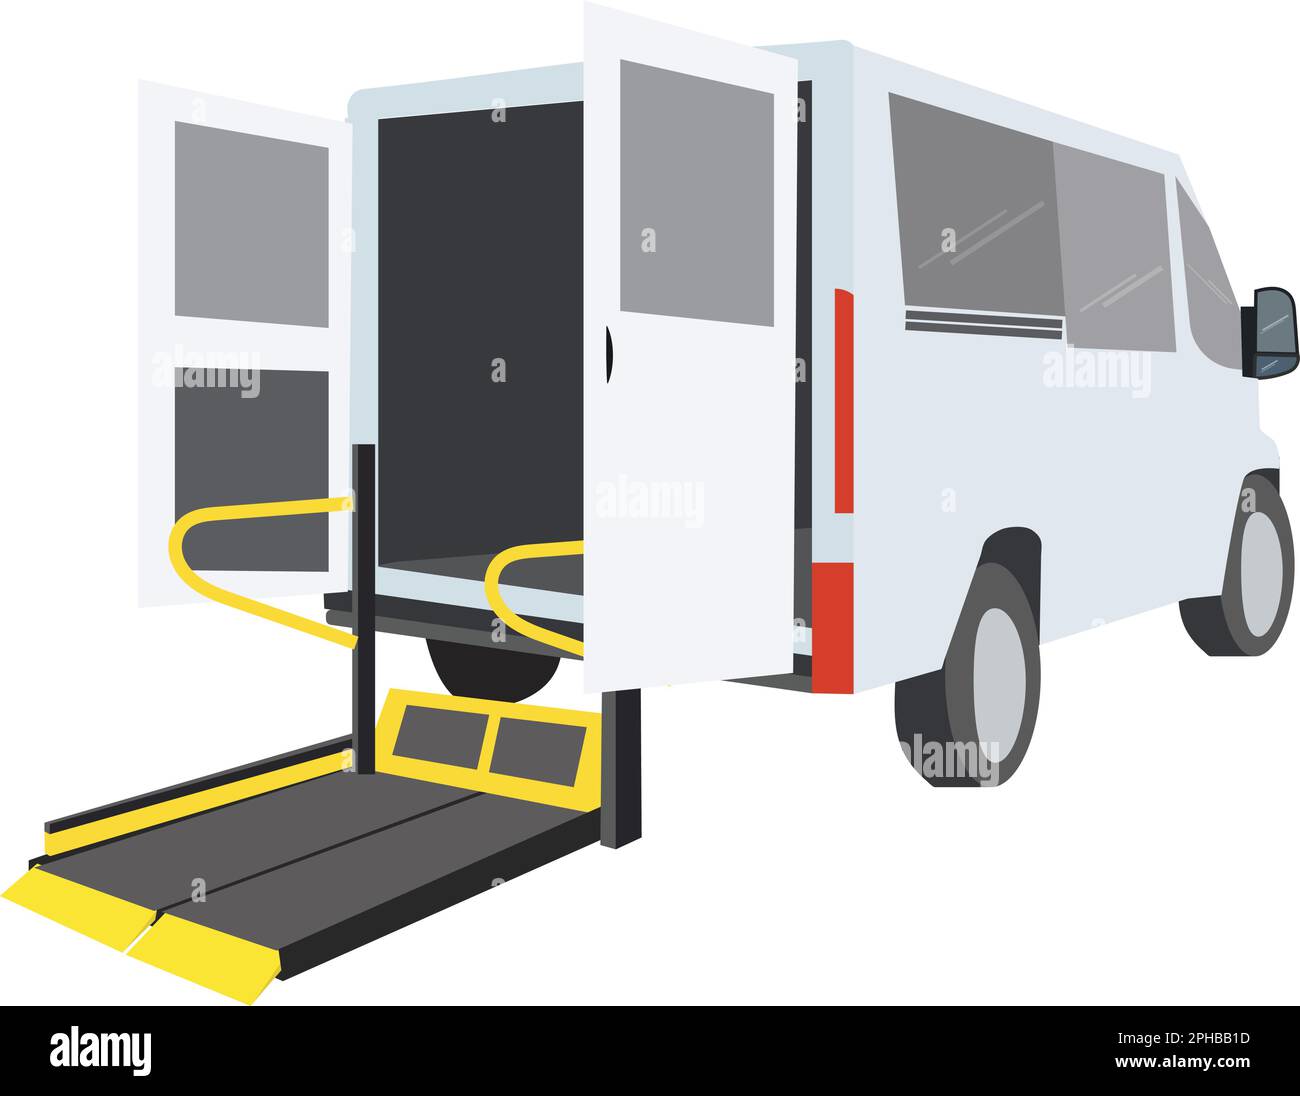 Un veicolo specializzato con barra gialla e corrimano, Bus utilizzando rampa di accesso per persone con disabilità e anziani. Concetto di taxi su sedia a rotelle. Foto Stock